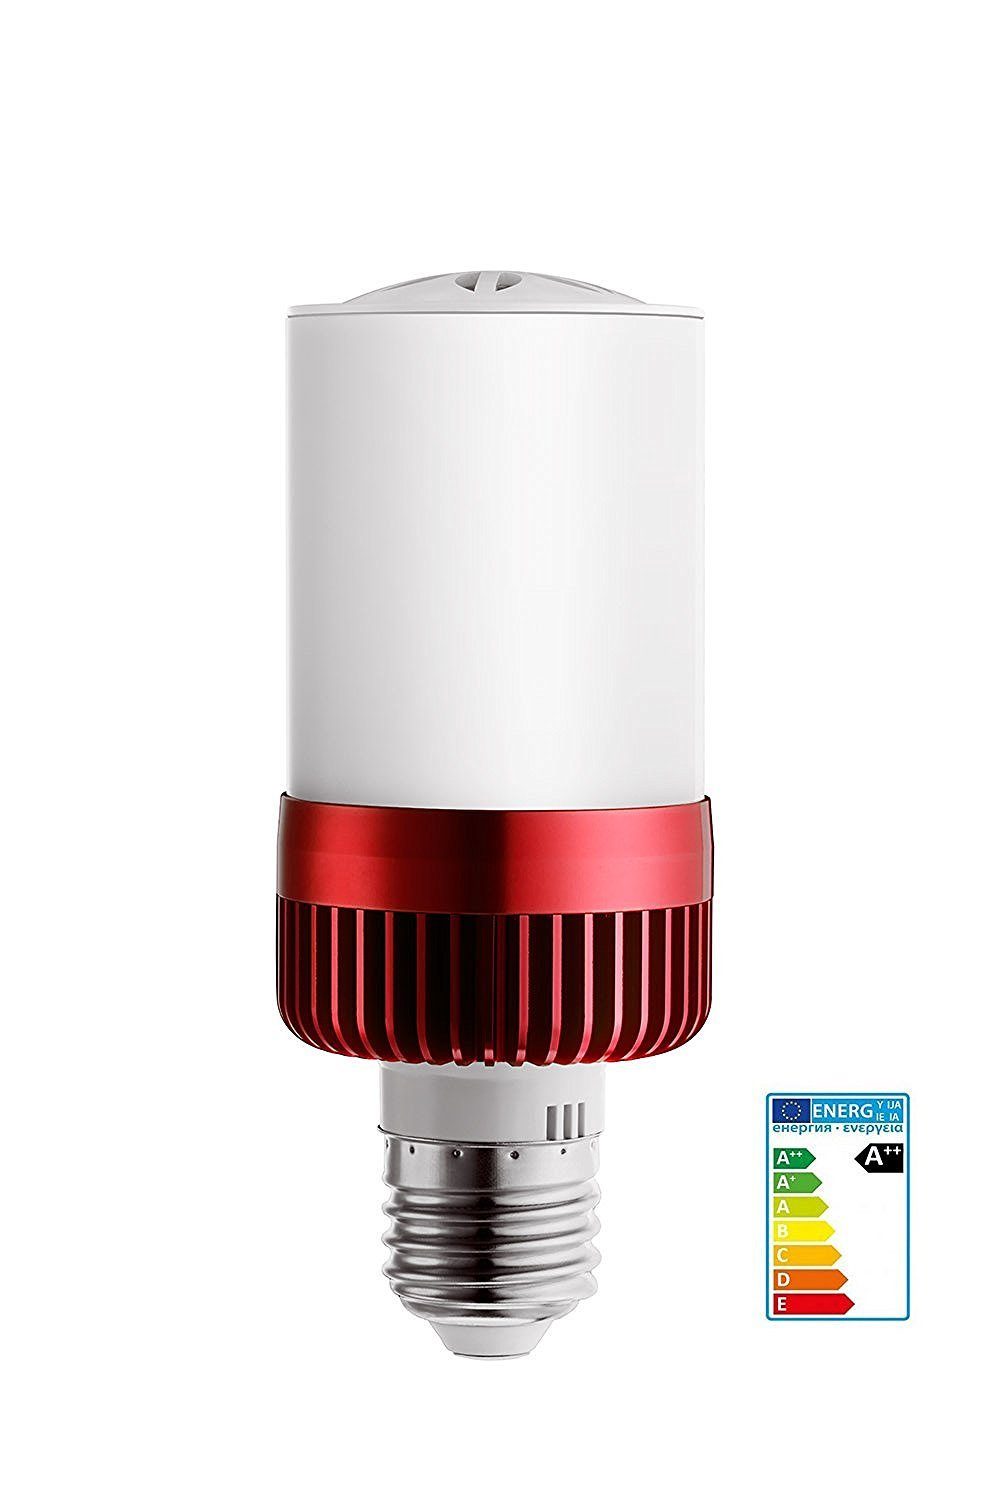 style home LED Deckenleuchte, Bluetooth Birne 4.5W Glühlampe und 3W  Bluetooth 4.0 Lautsprecher E27 Fassung 15m Reichweite Warmweiss(3000K)  nicht dimmbar 400-460LM (Rot) online kaufen | OTTO